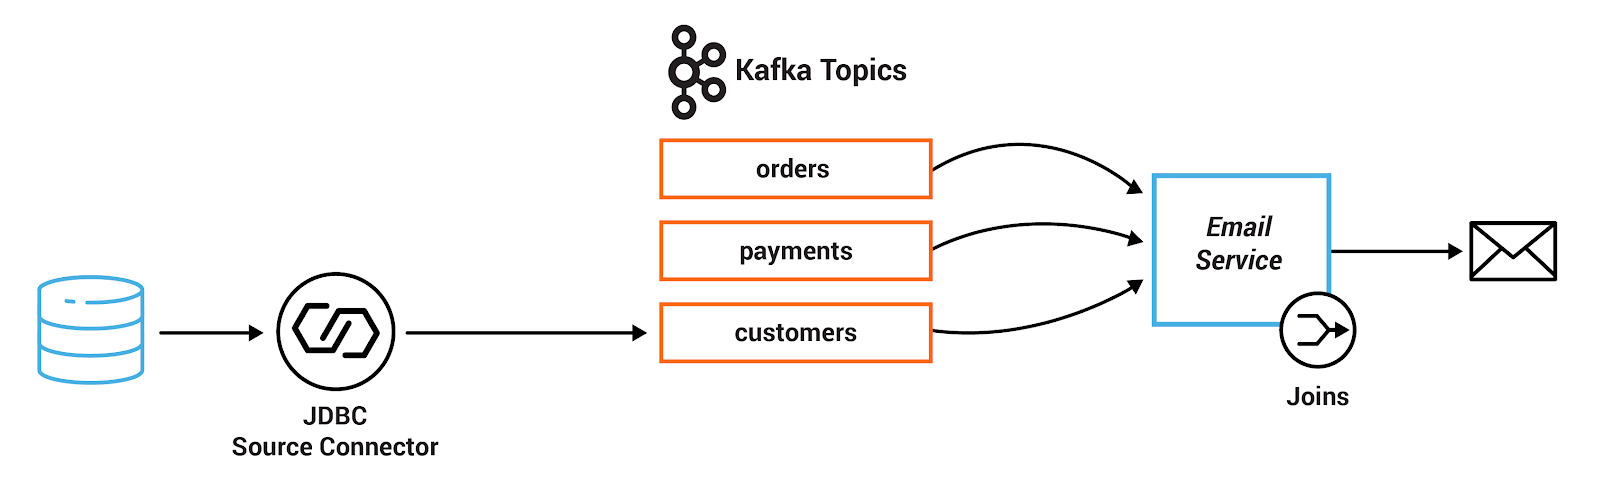 Kafka stream flow diagram